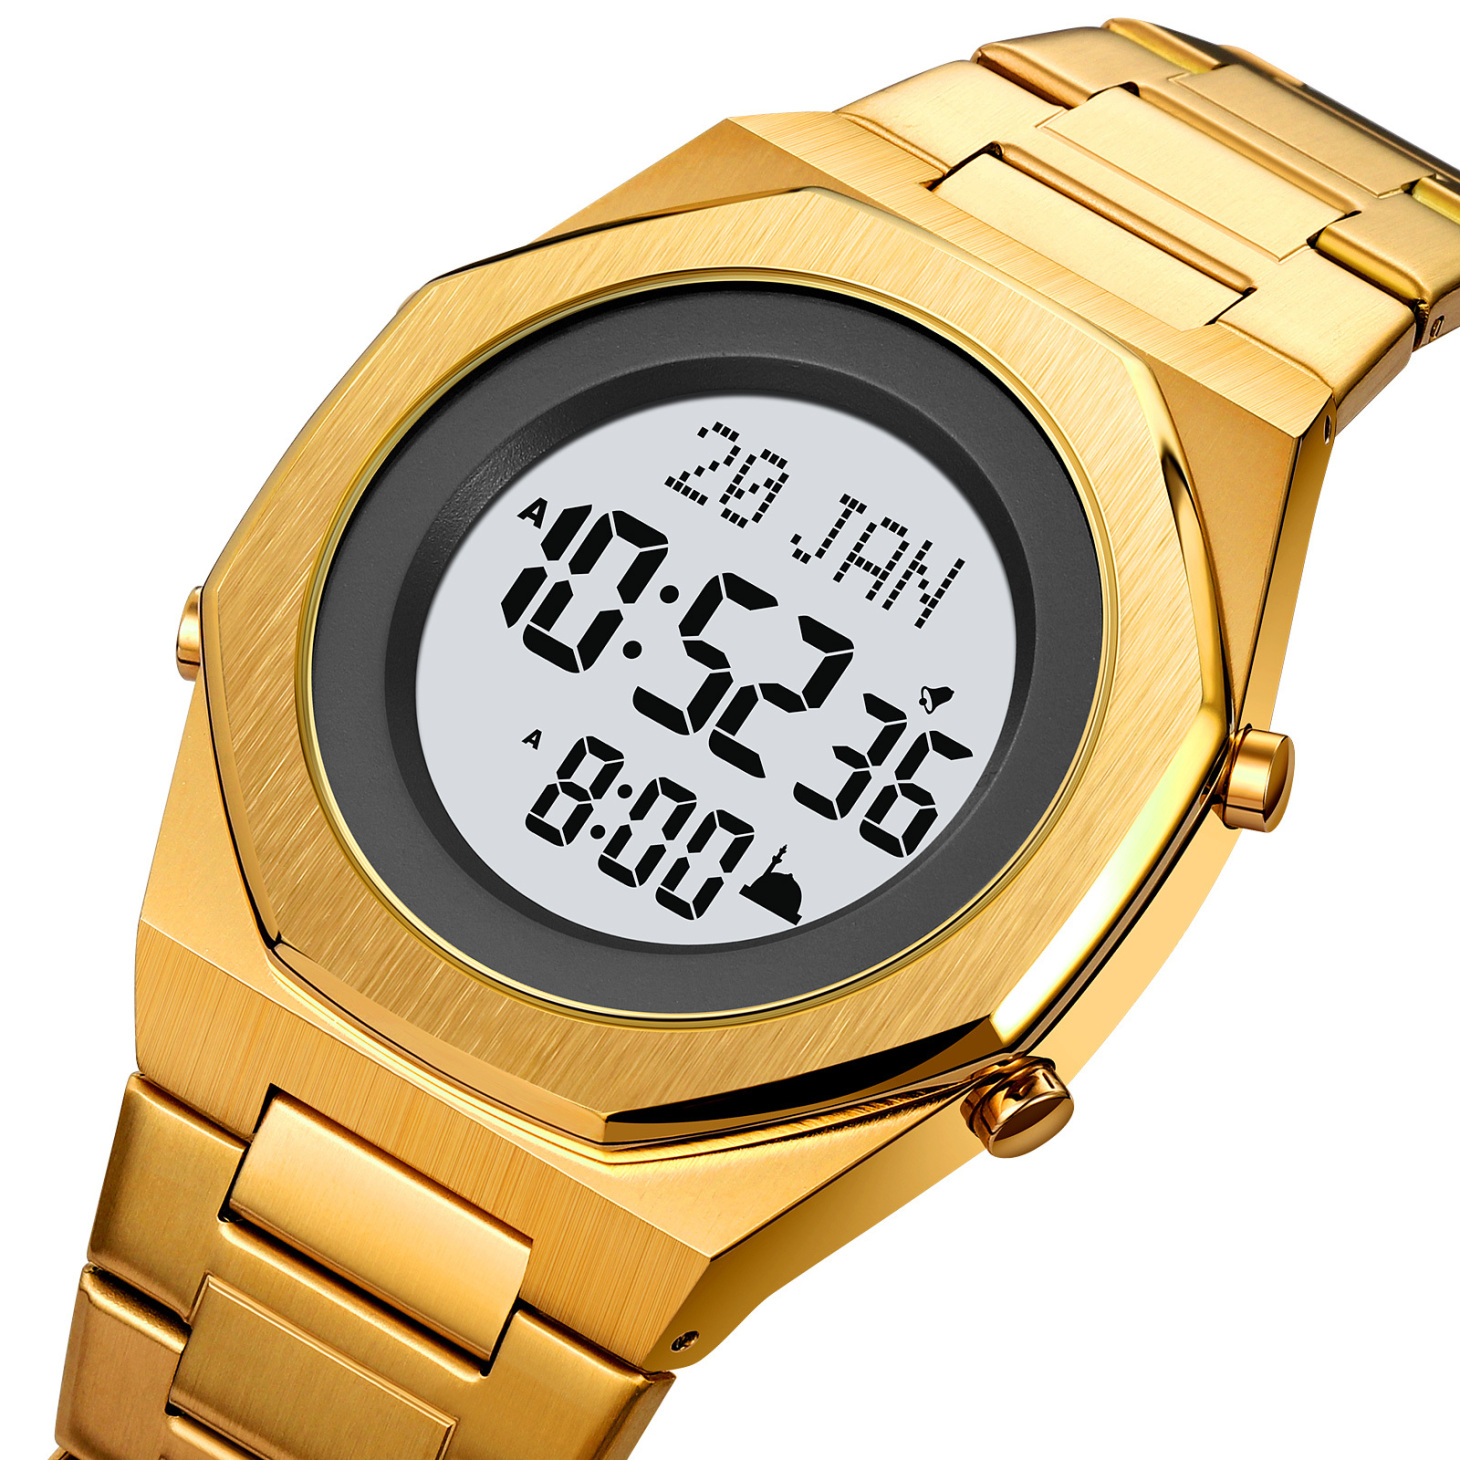  ساعت اسکمی اذان گو مدل 2069 طلایی 